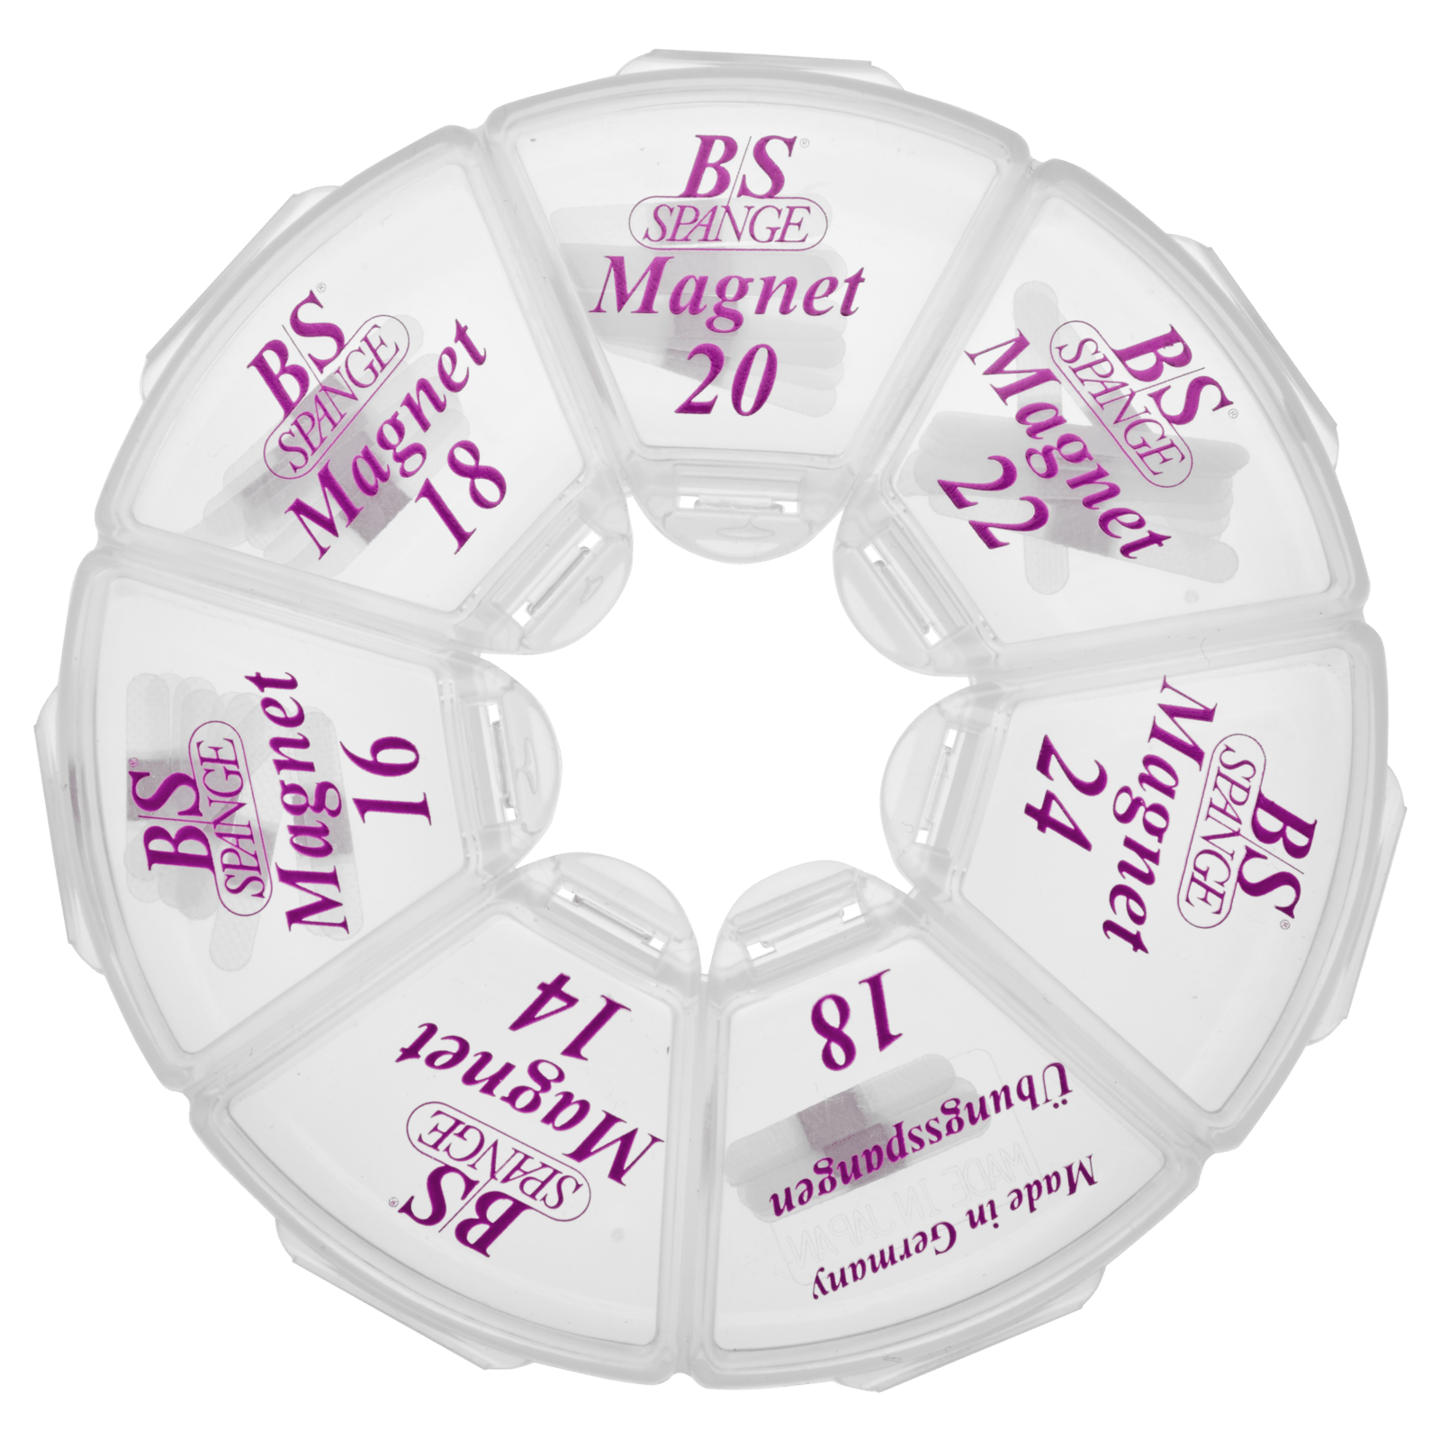 B/S - B/S-Spangen Magnet Rondell Starter